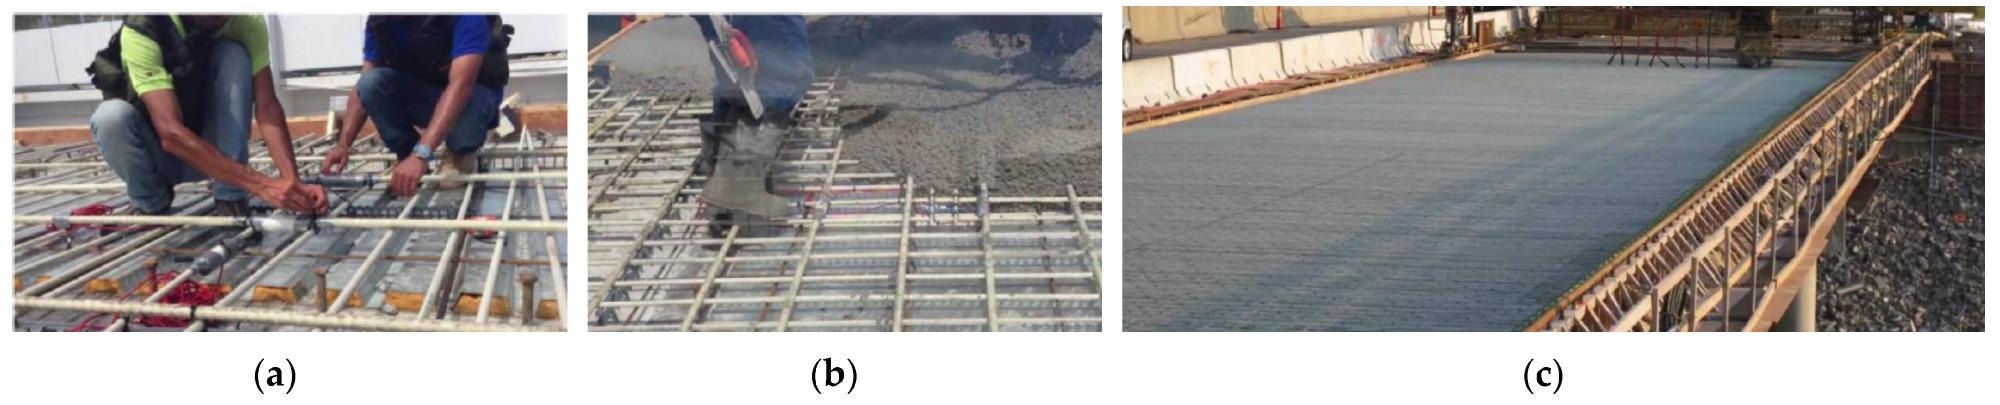 Demonstration project for FRP-SSC bridge decks: (a) FRP mesh; (b) concrete casting; (c) bridge deck.